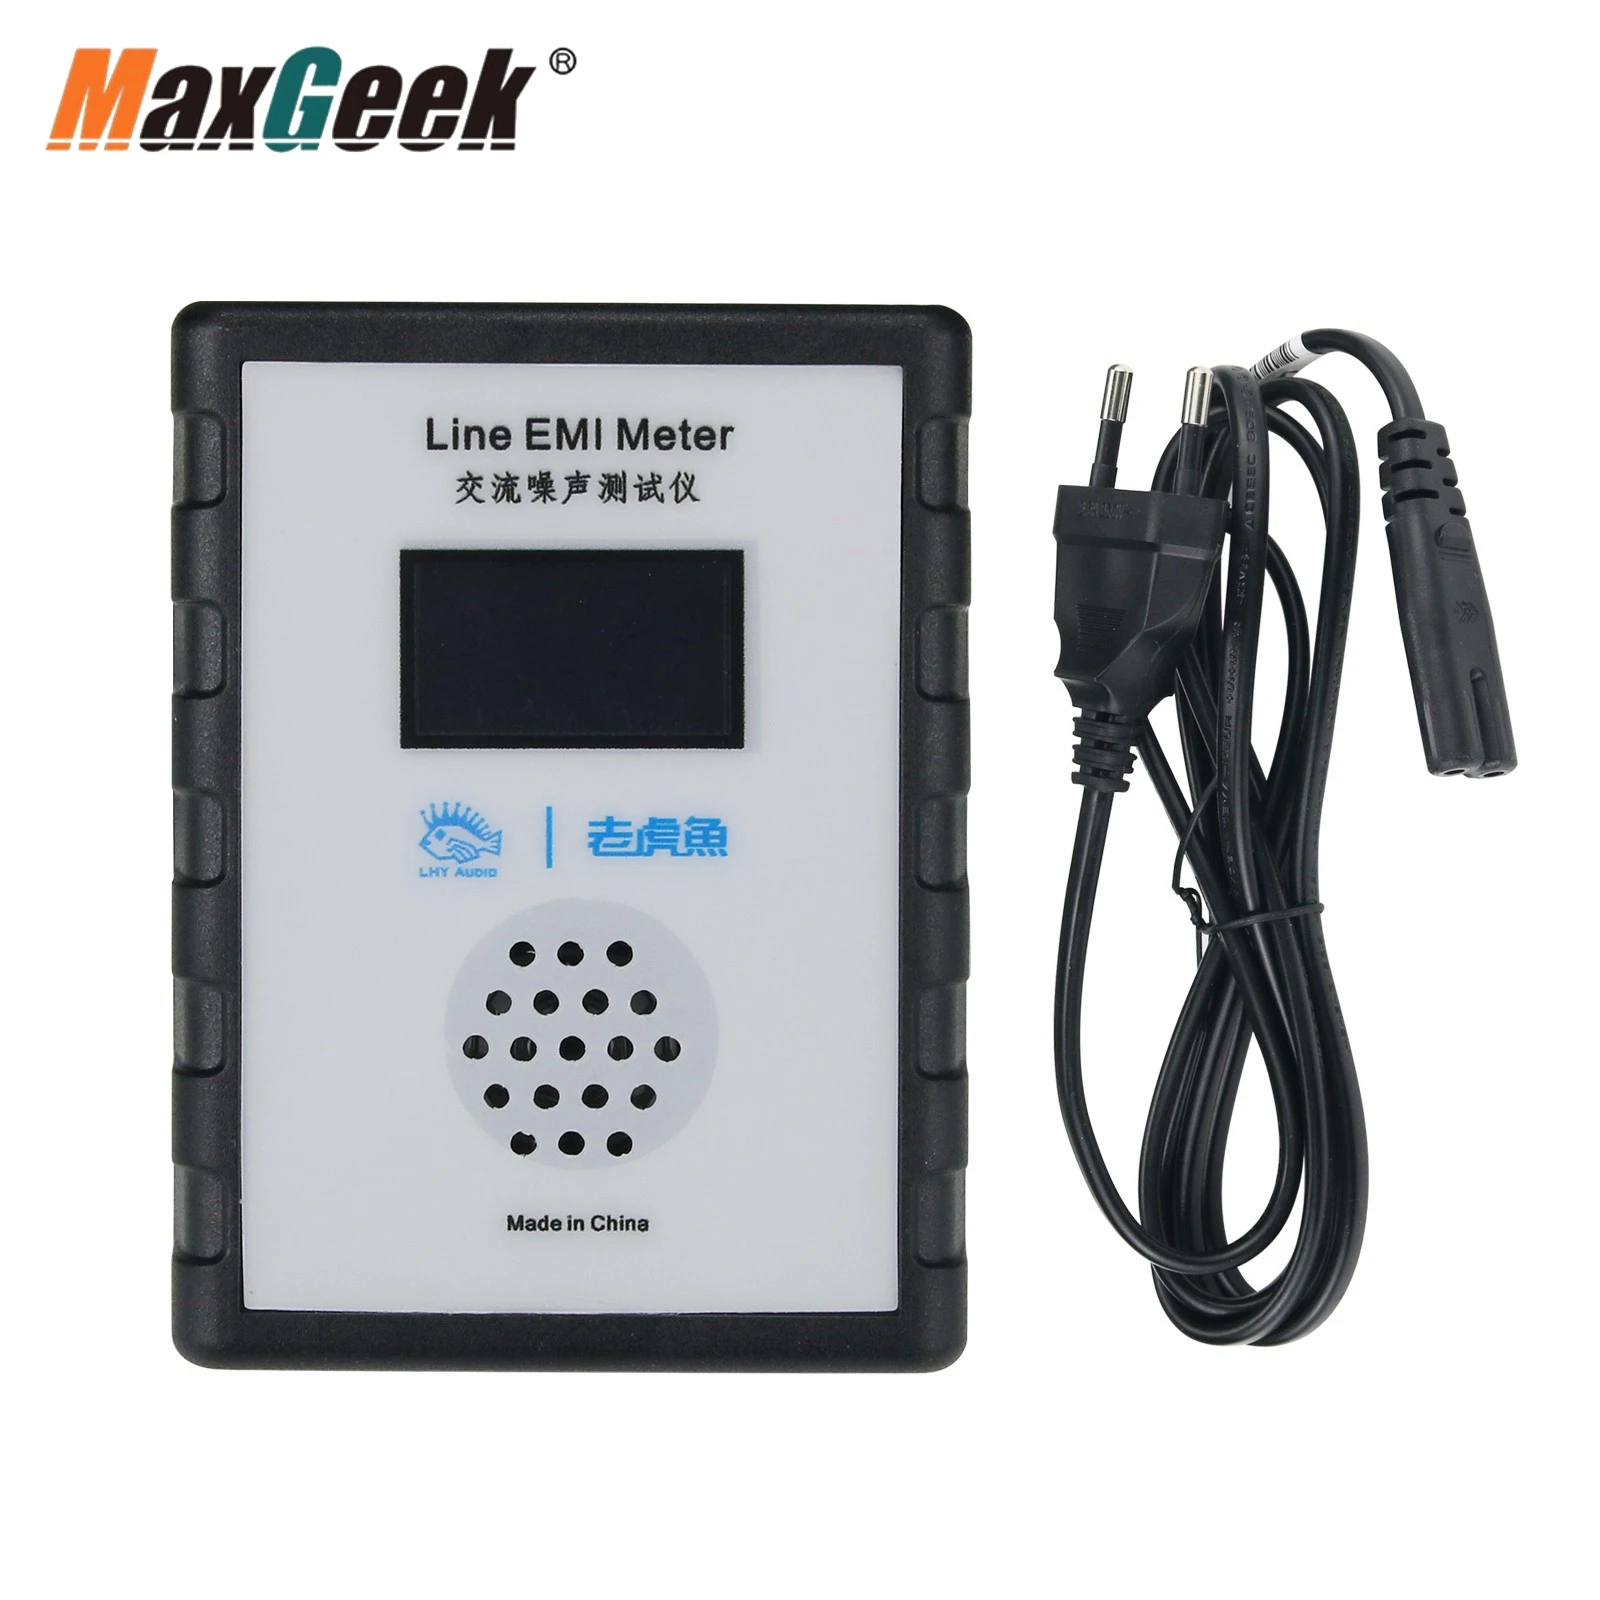 Линейный измеритель электромагнитных помех Maxgeek 10 кГц-10 МГц, сетевой анализатор шума, измеритель электромагнитных помех с OLED-дисплеем